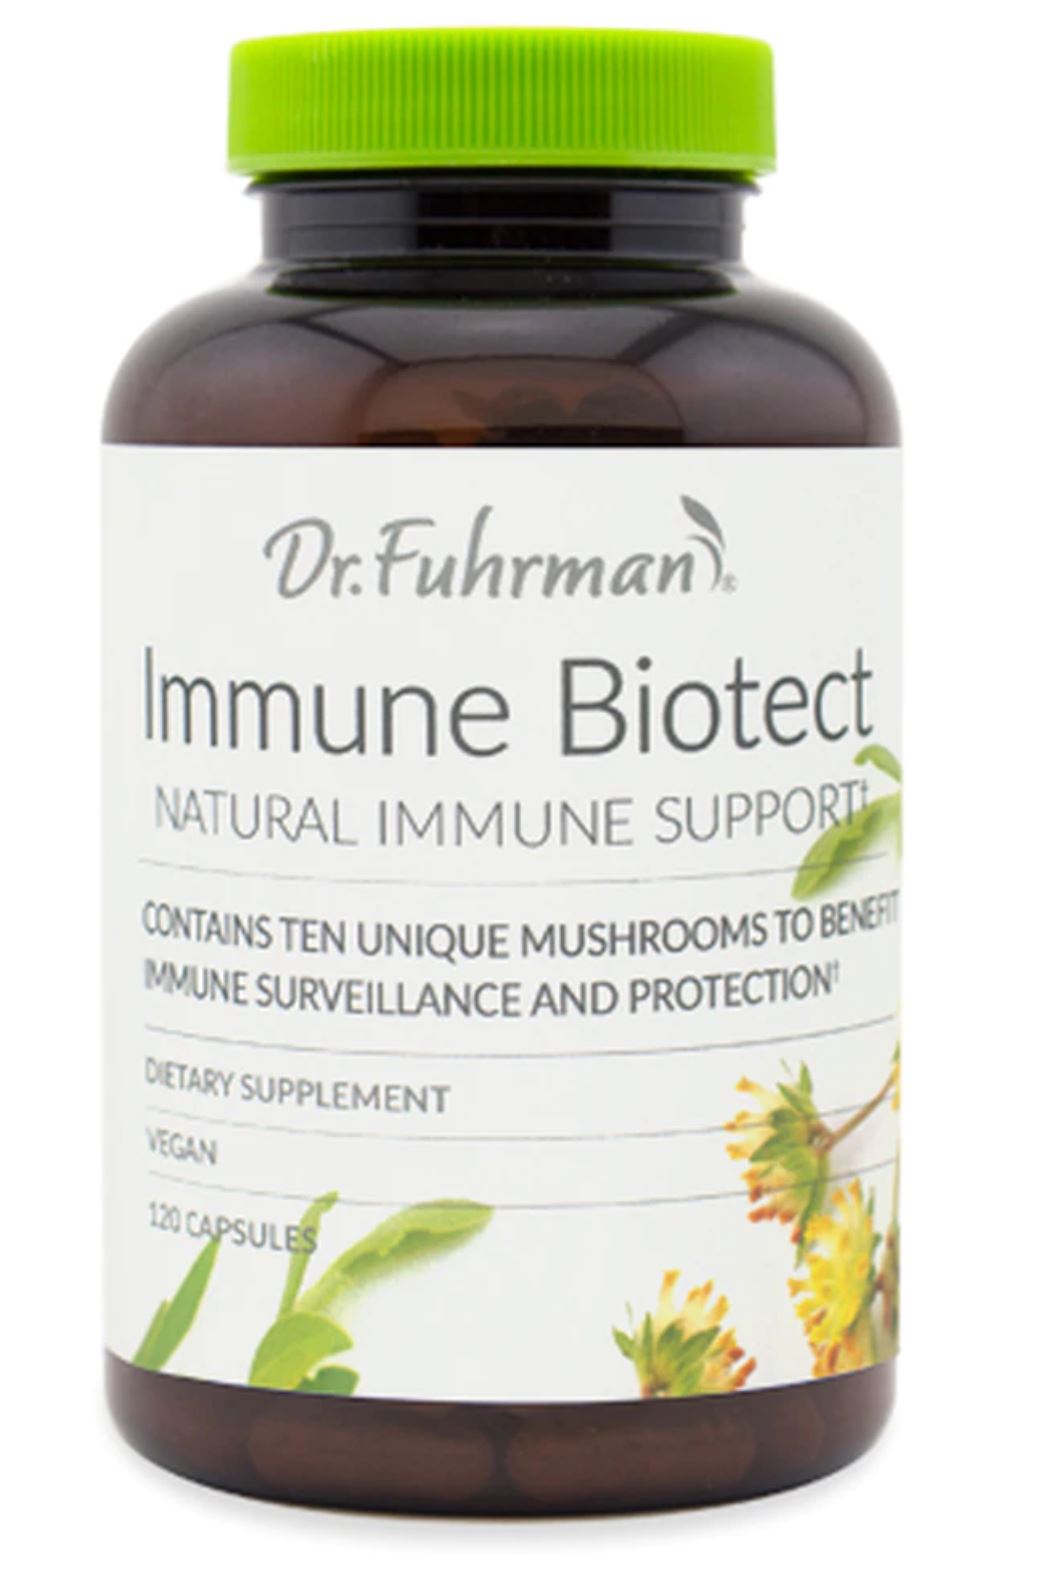 Dr Fuhrman Immune Biotect Review